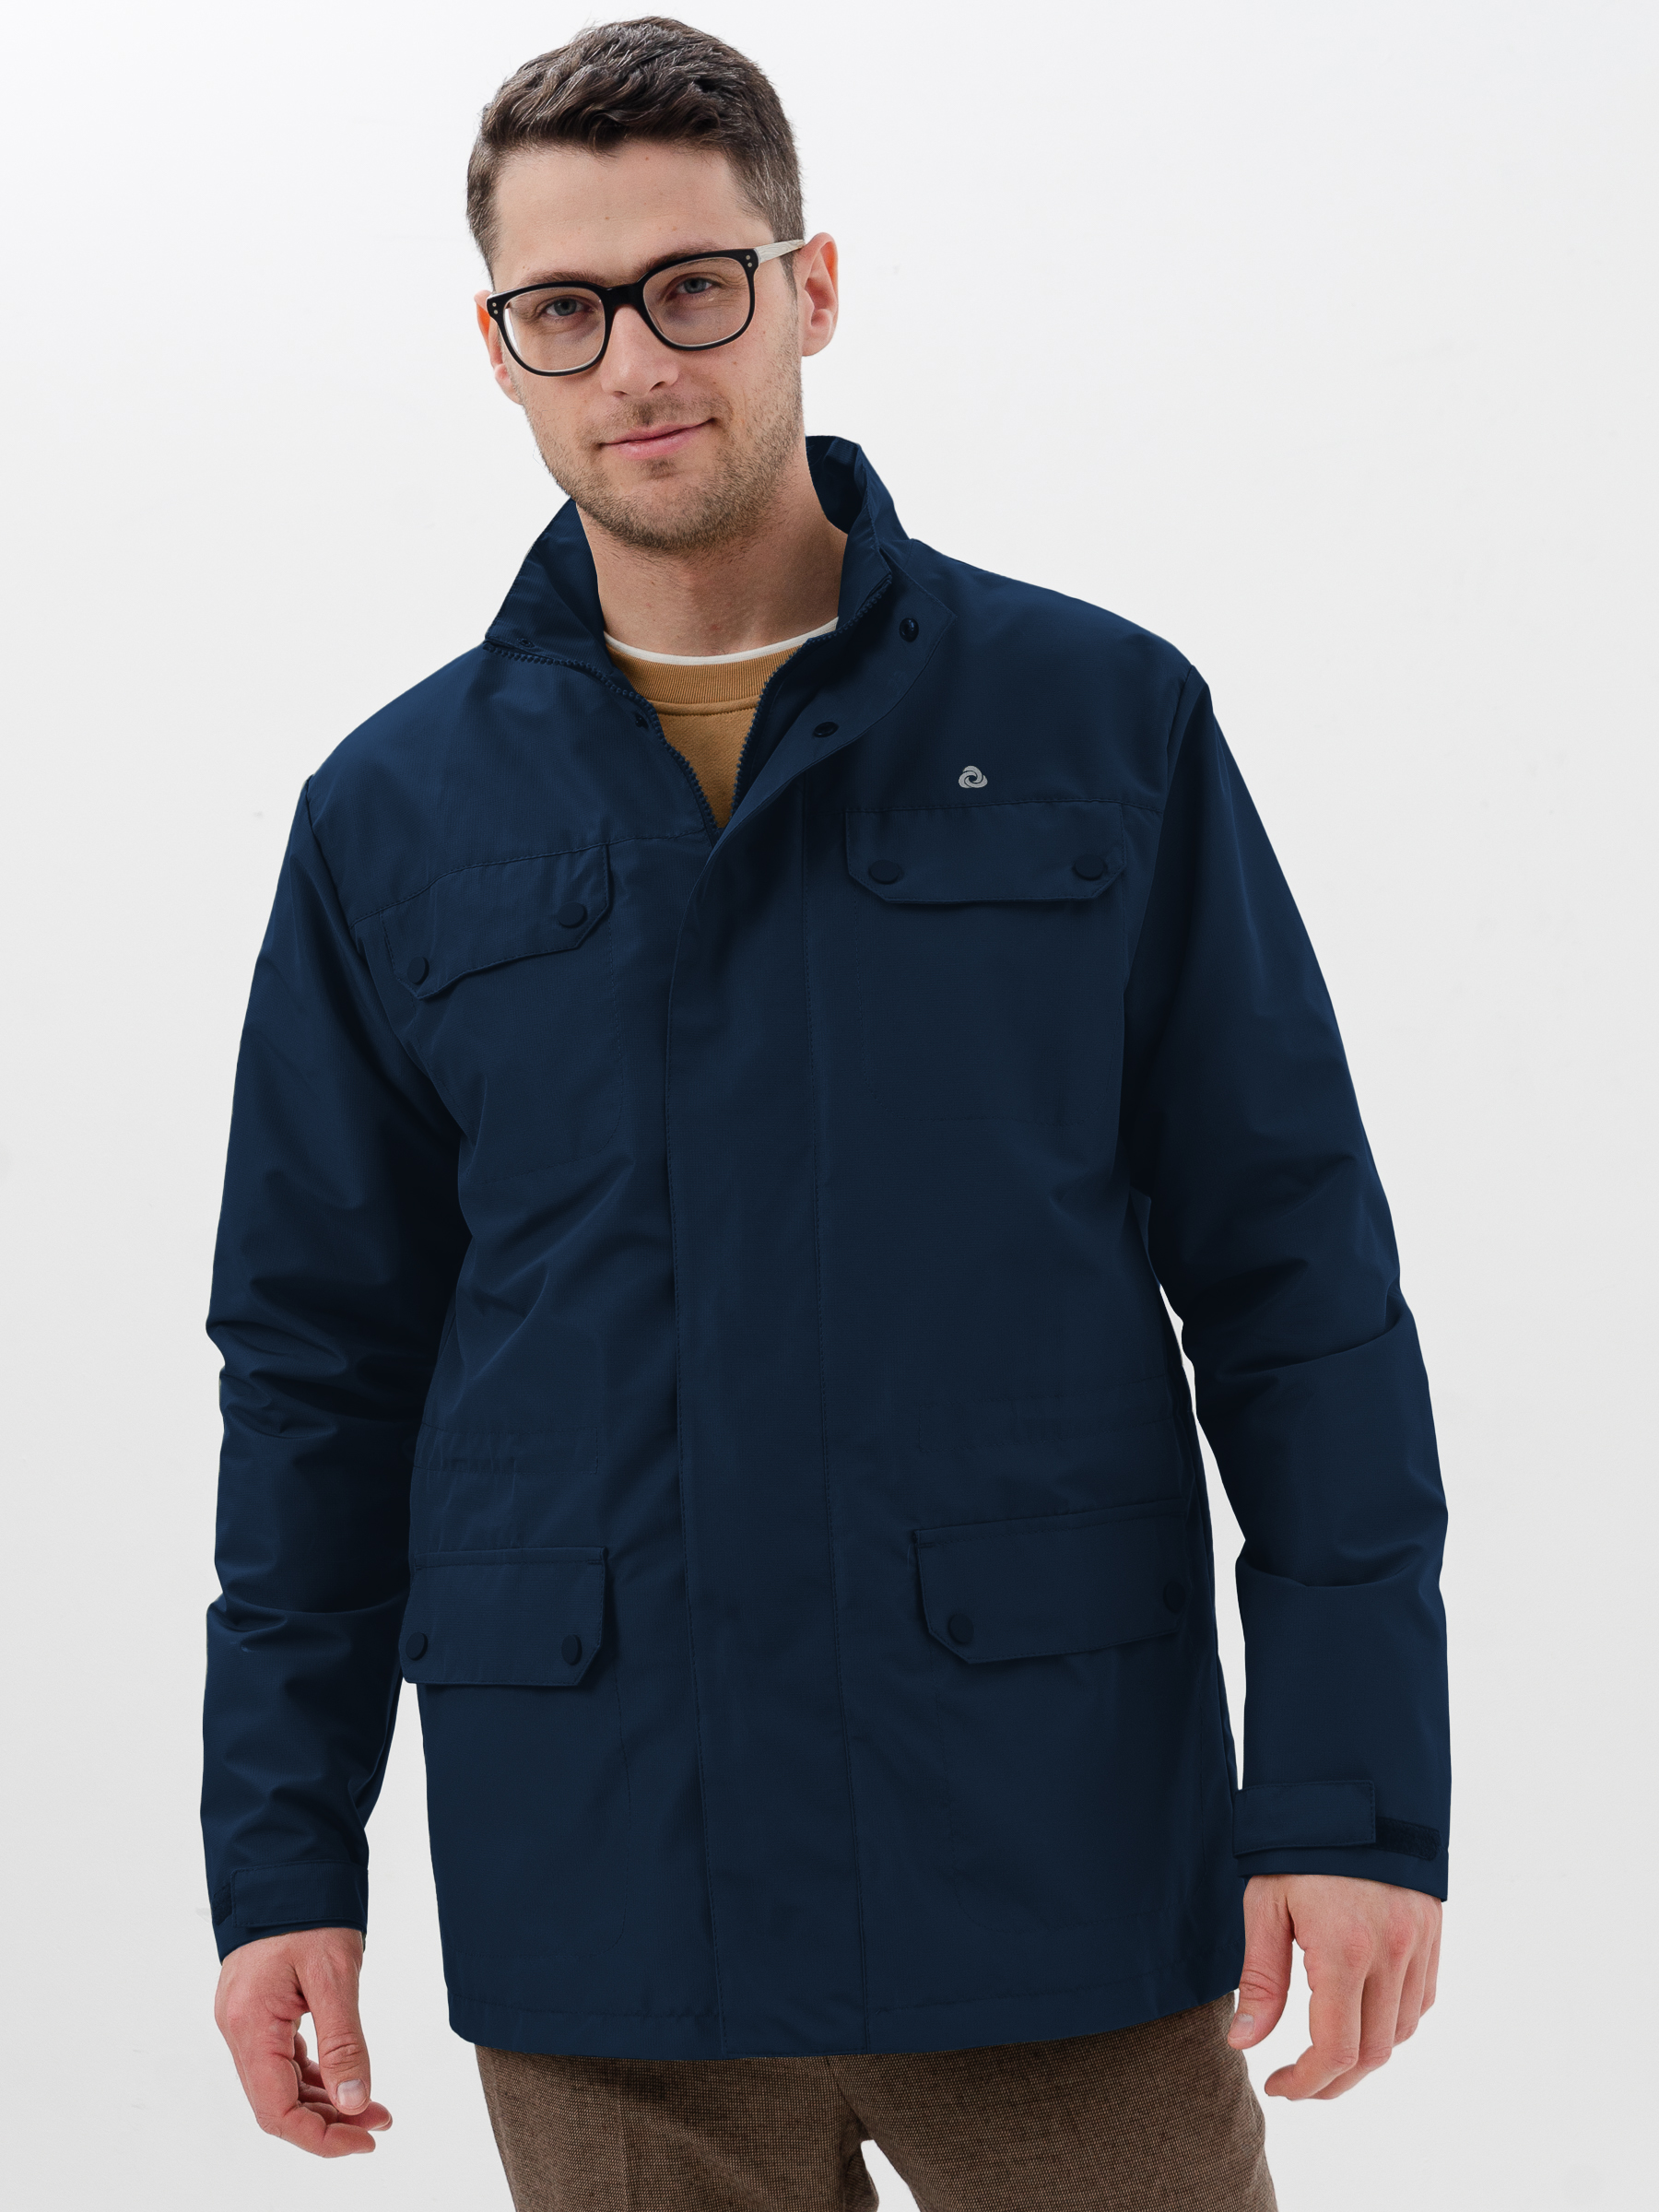 Куртка мужская CosmoTex 241374 синяя 52-54/170-176